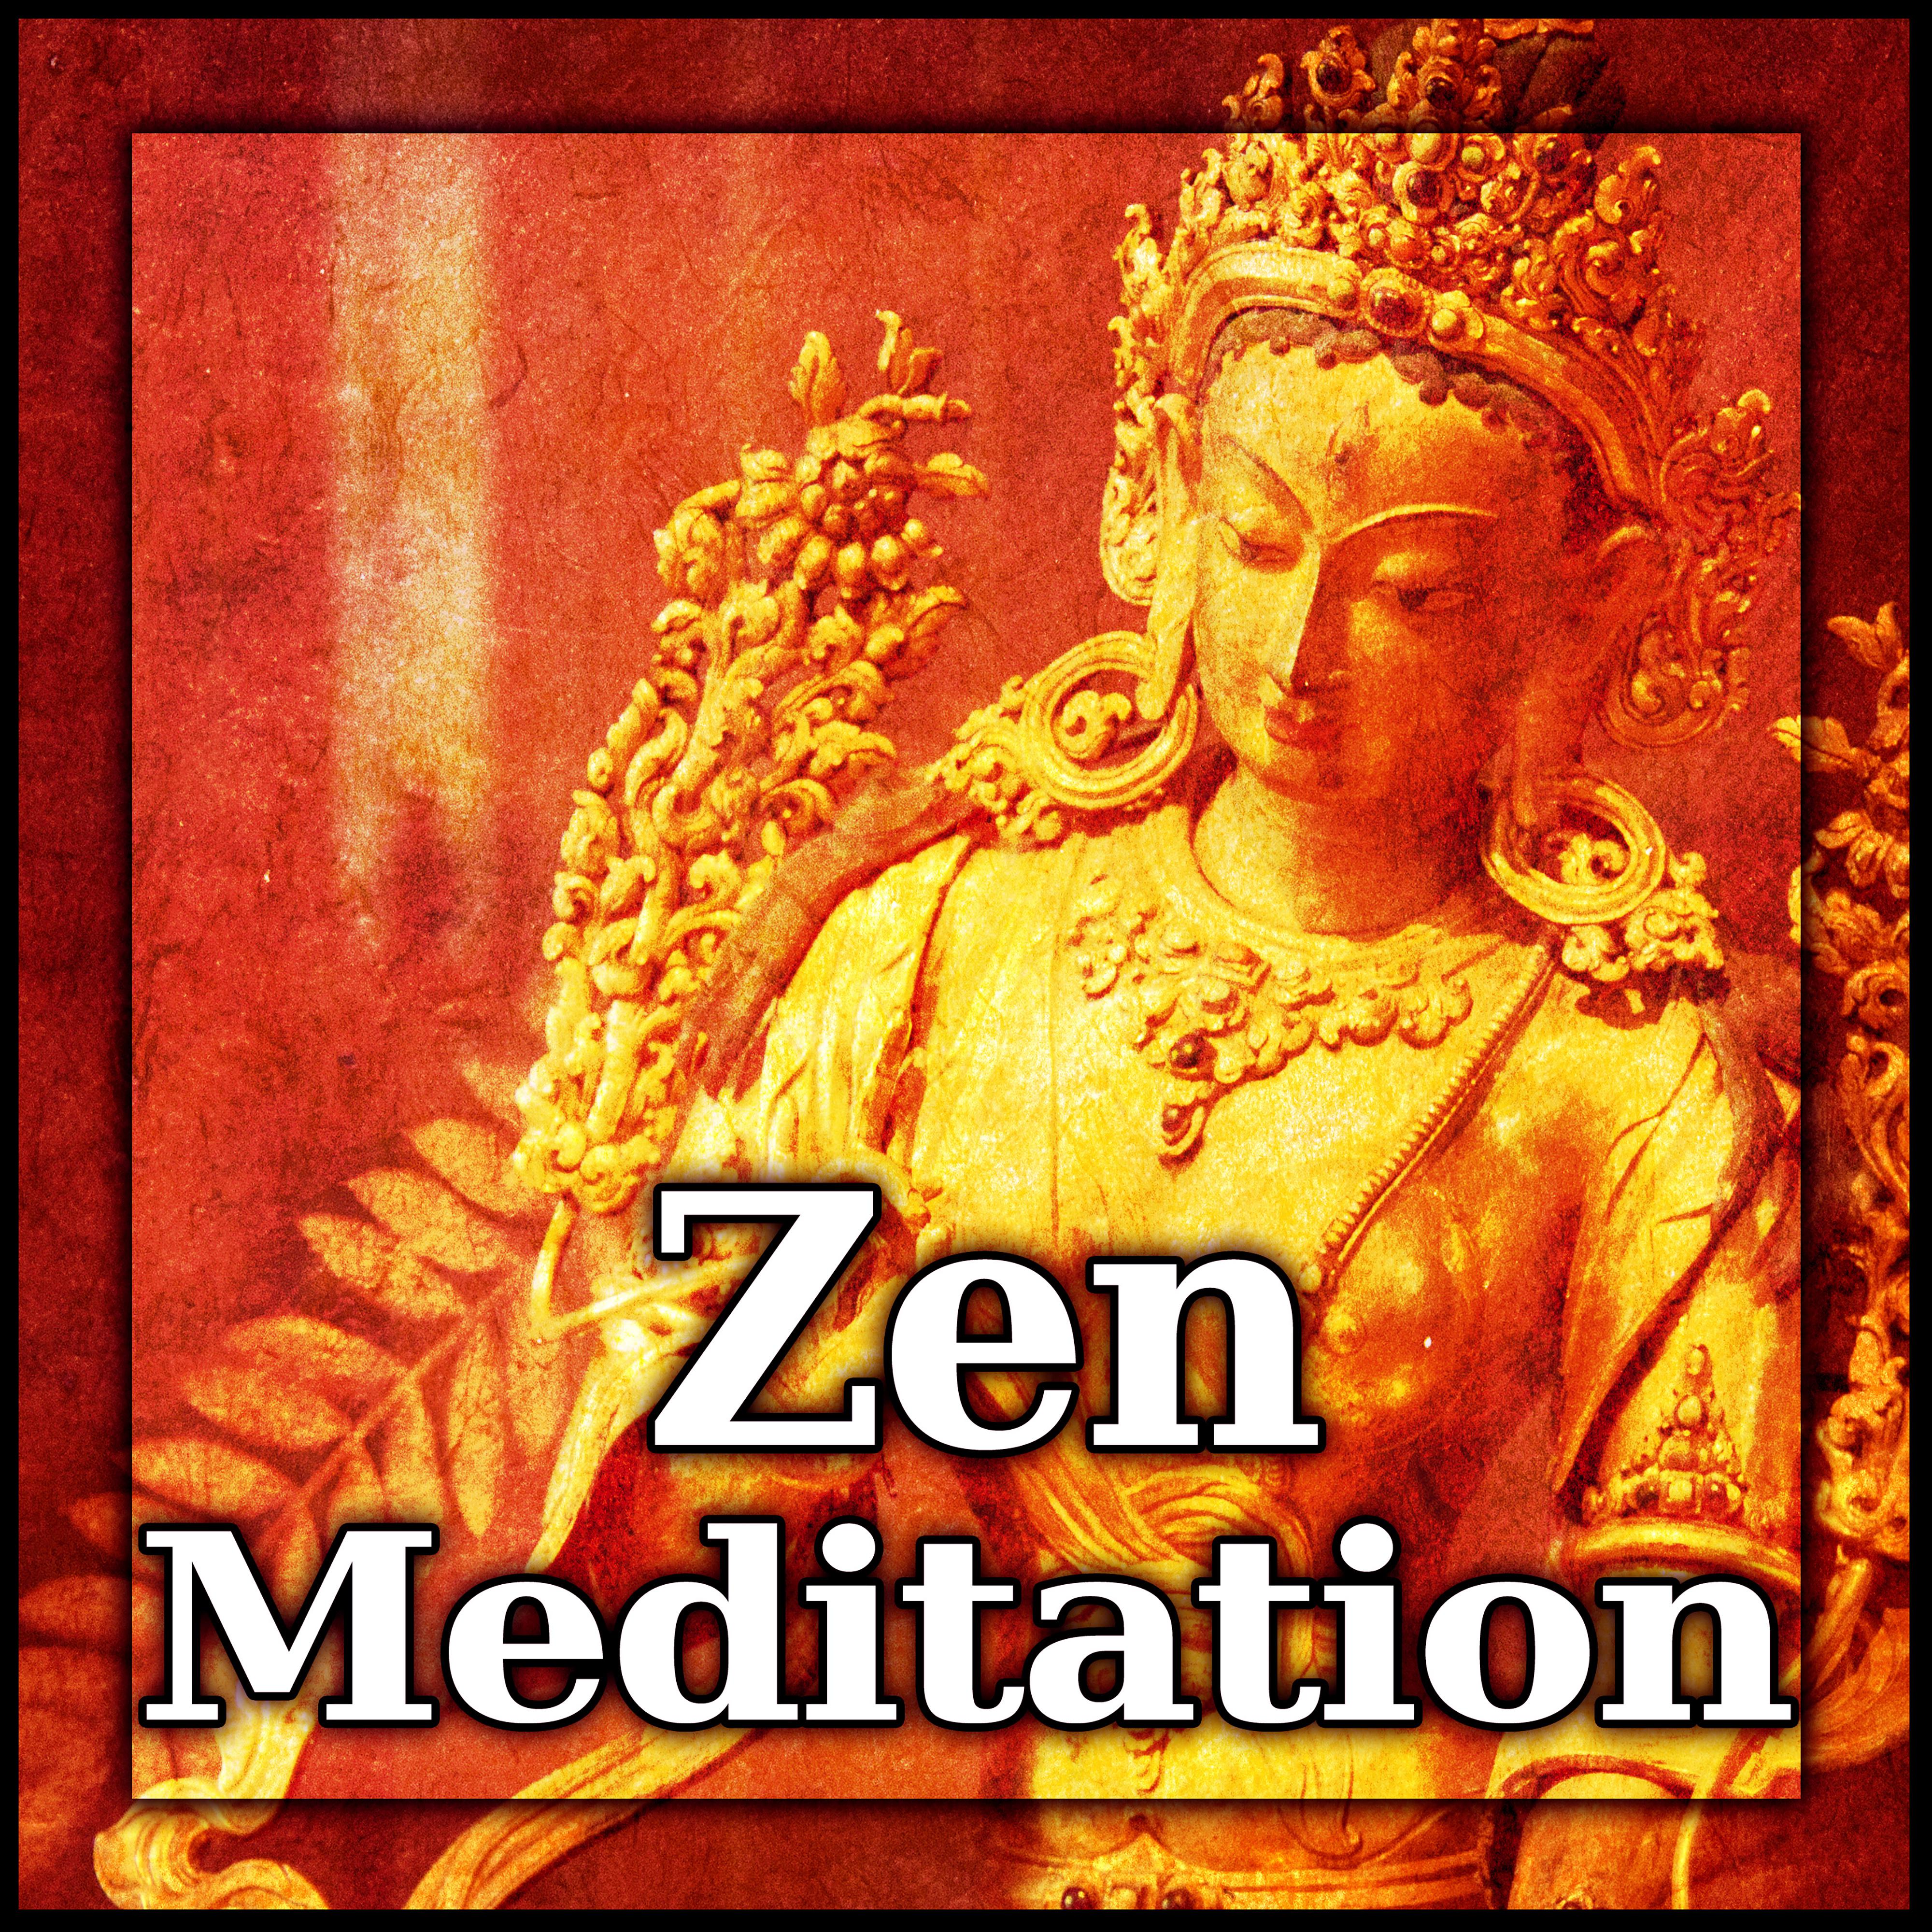 Zen Meditacio n  Zen Asia tico, Resto, Flauta Orientales, Meditacio n Zen, Bienestar, Relajarse